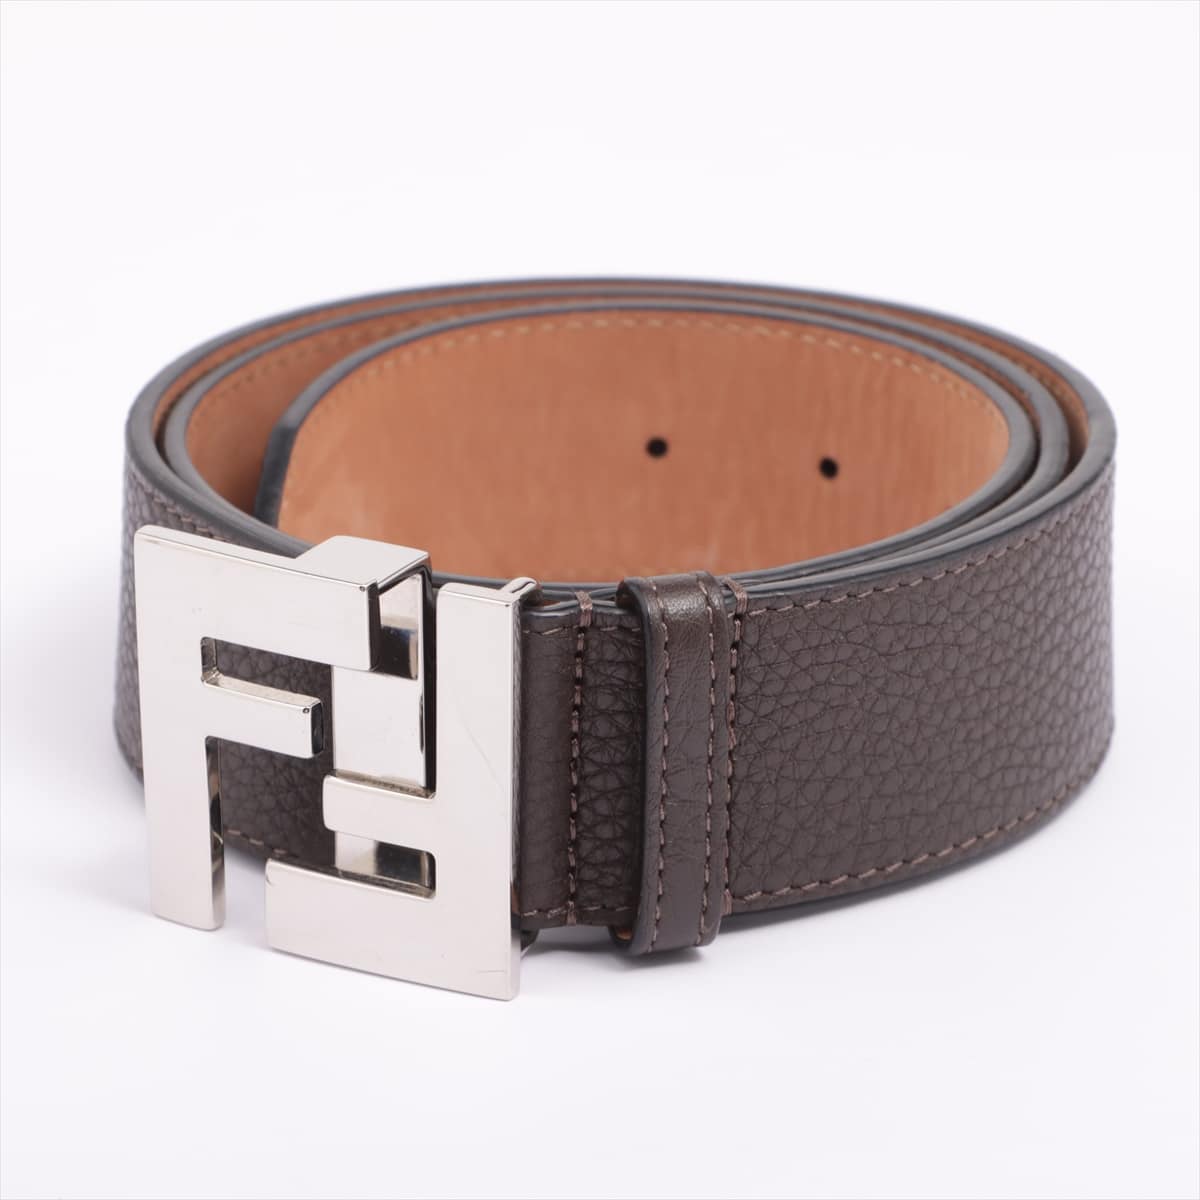 Fendi Logo Belt GP & Leather Brown Reduced damage to belt holes